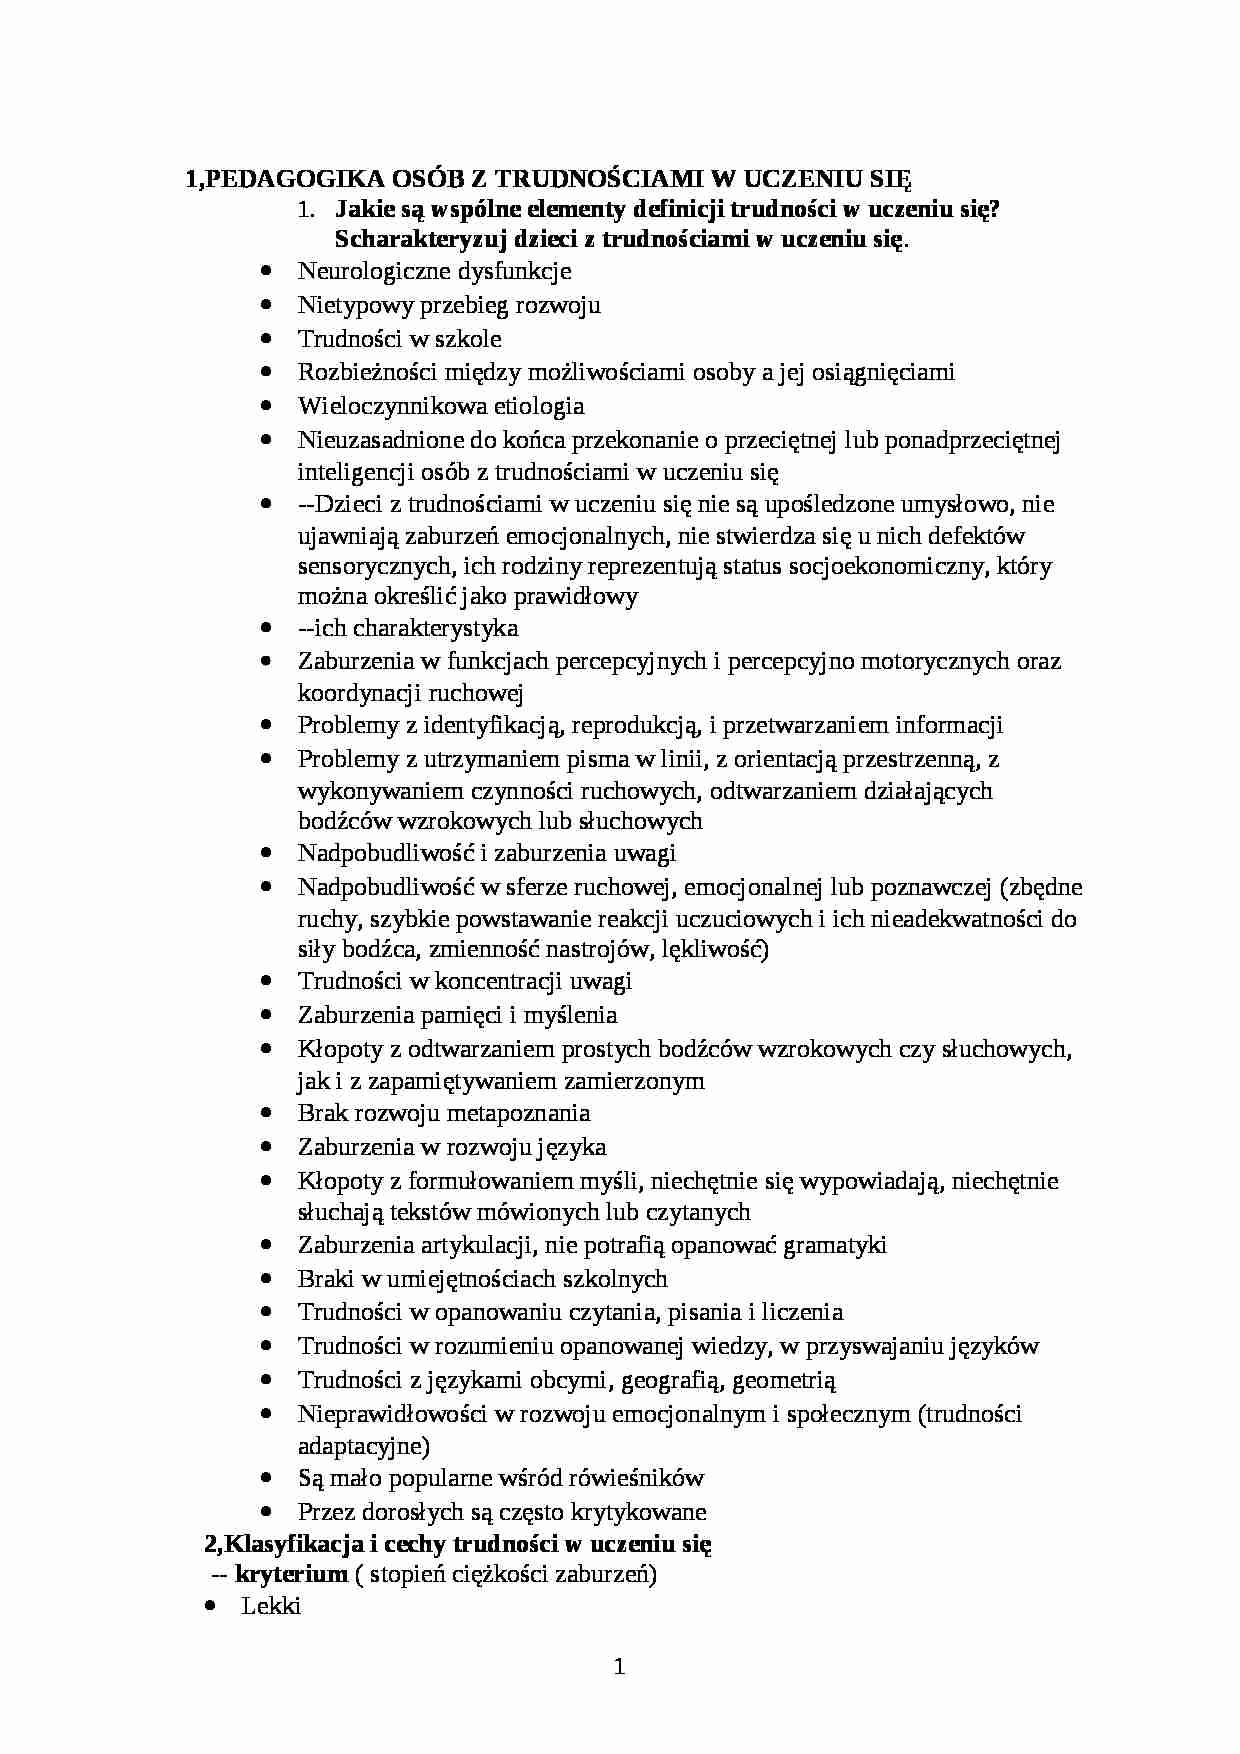 Pedagogika specjalna, oligofrenopedagogika, surdopedagogika,w tyflopedagogika - pedagogika - strona 1